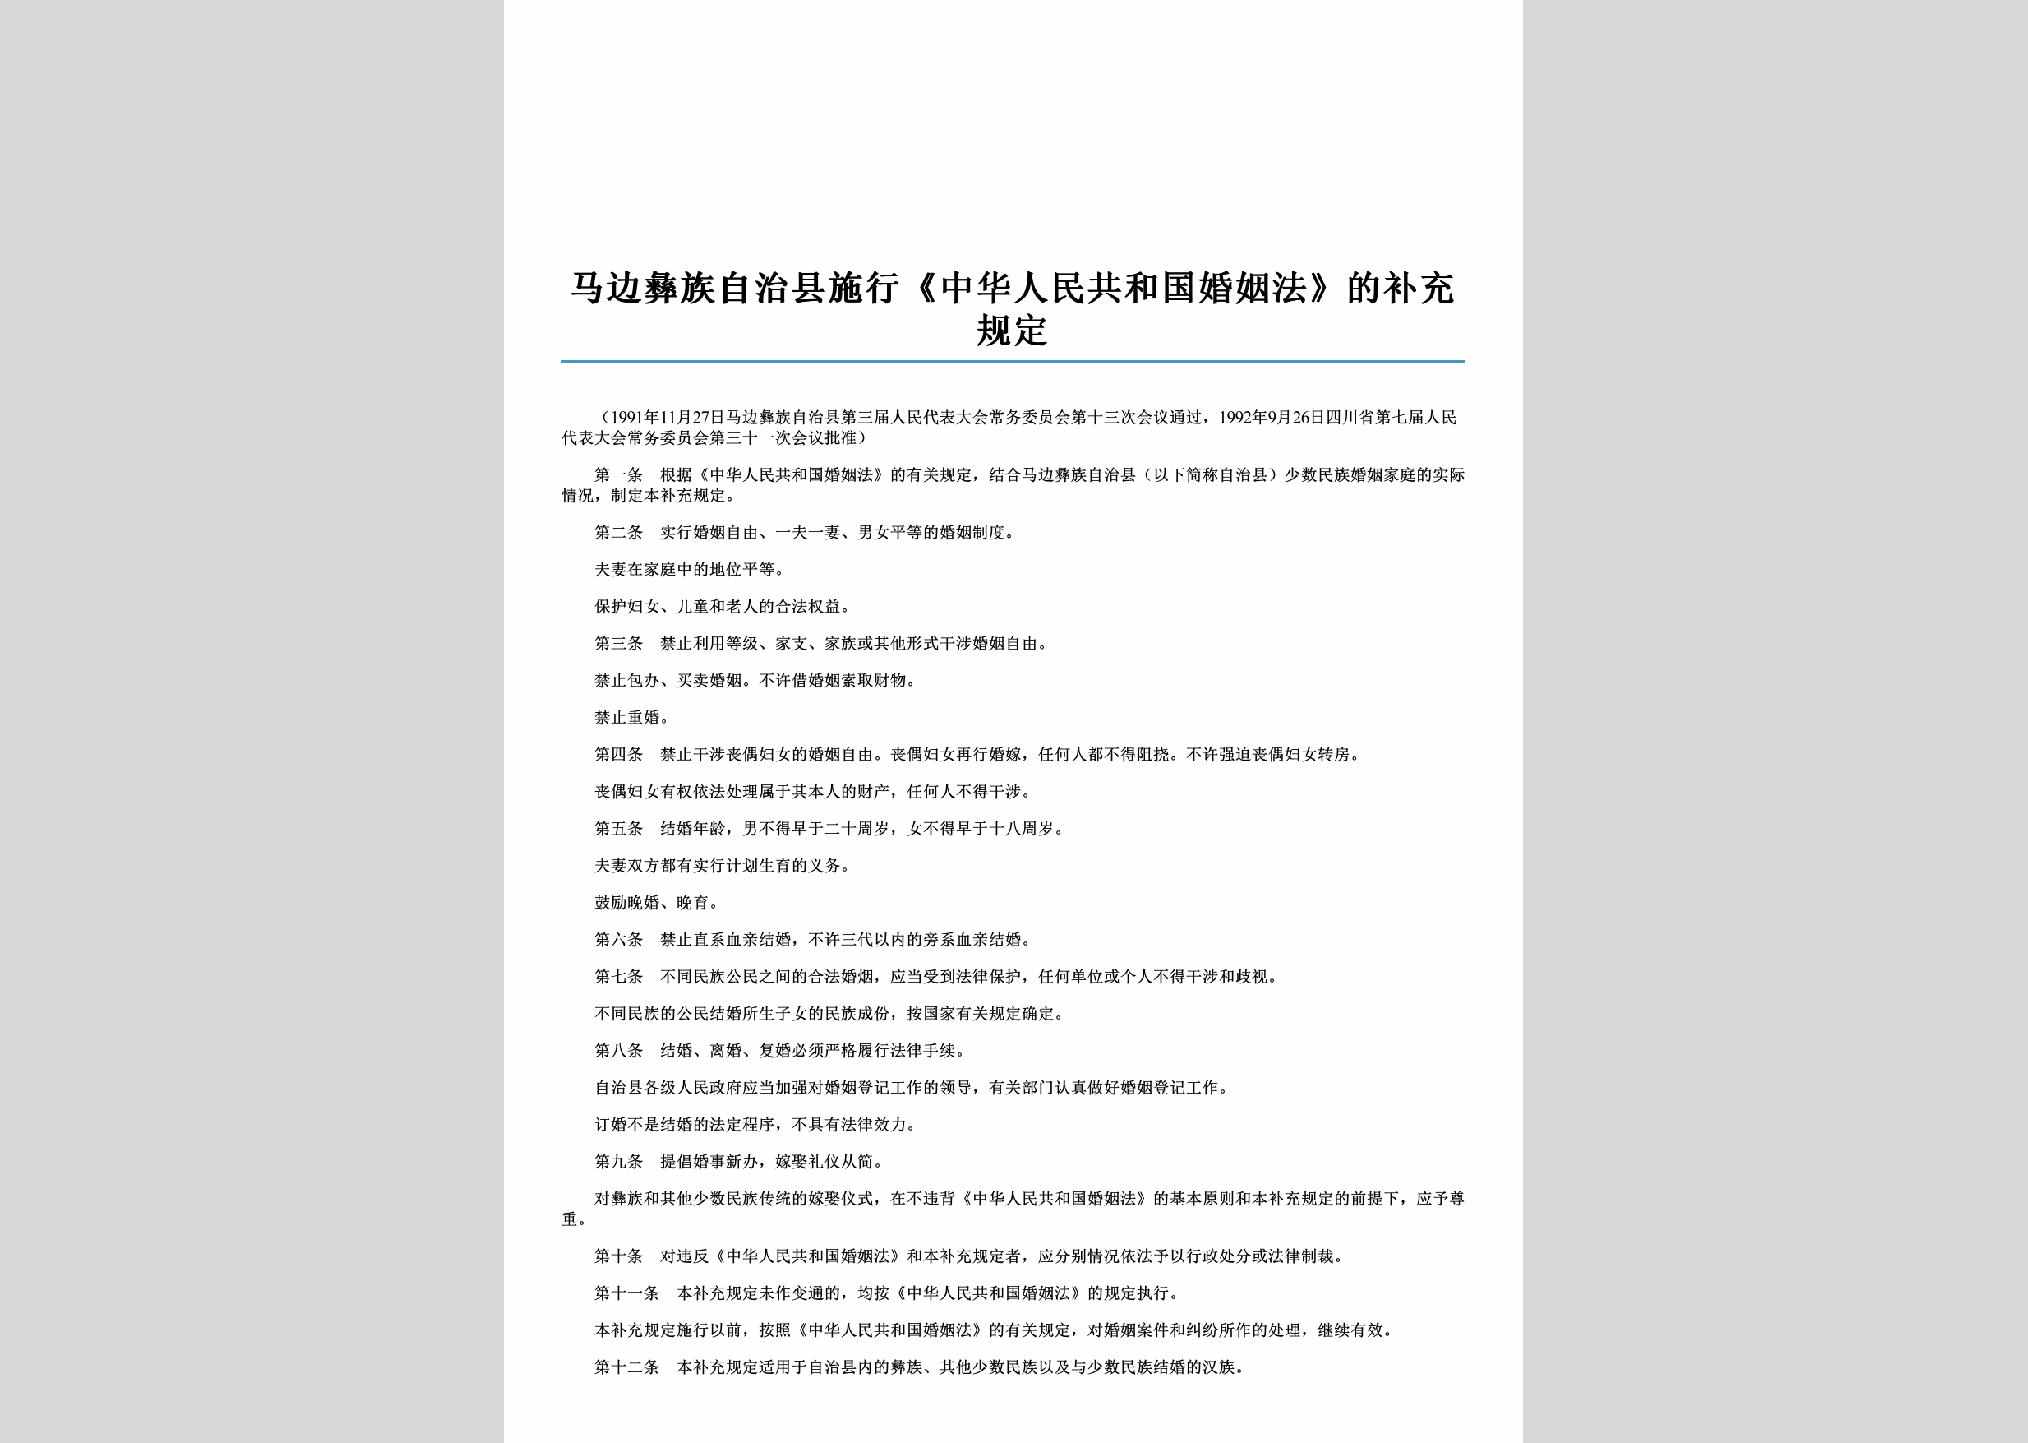 SC-SXHYBCGD-2006：马边彝族自治县施行《中华人民共和国婚姻法》的补充规定